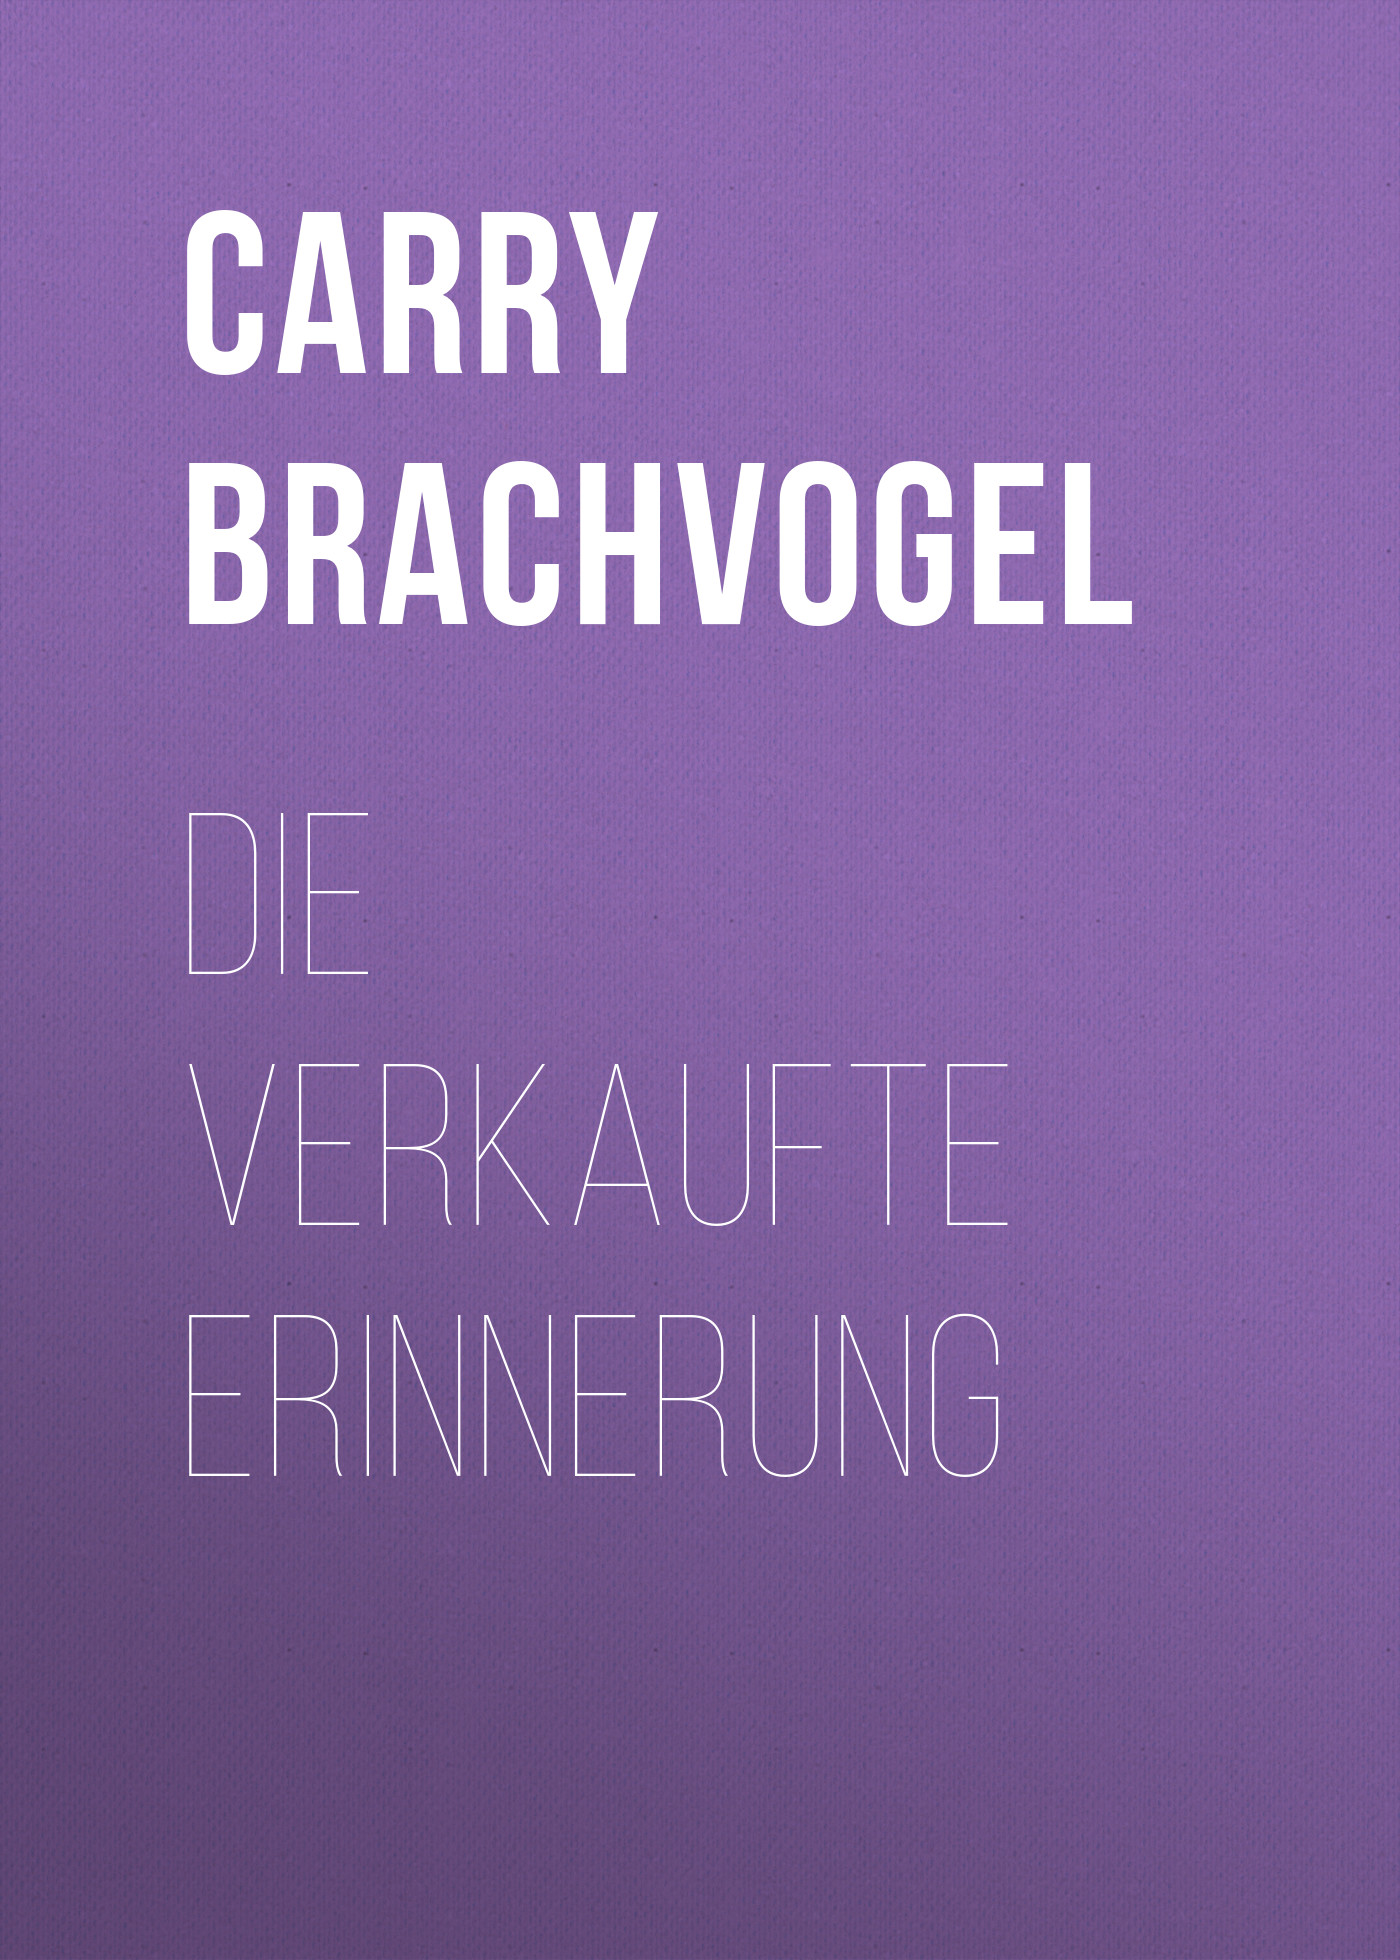 Книга Die verkaufte Erinnerung из серии , созданная Carry Brachvogel, может относится к жанру Зарубежная классика. Стоимость электронной книги Die verkaufte Erinnerung с идентификатором 48633076 составляет 0 руб.